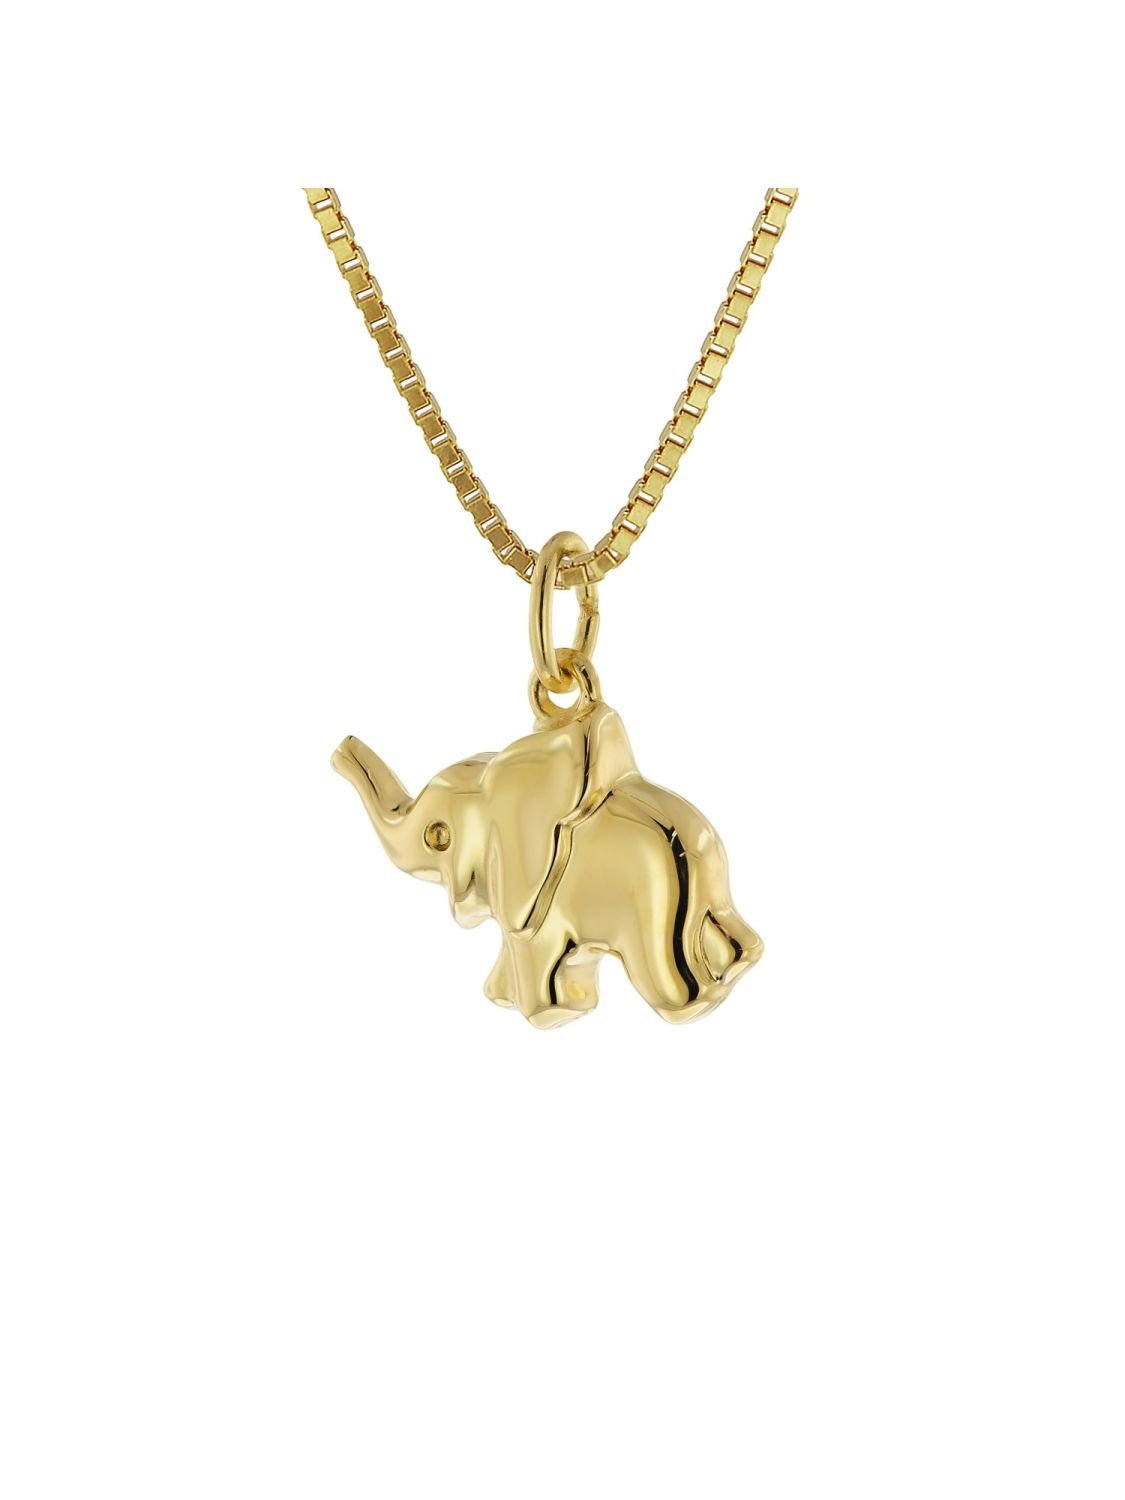 Acalee Halskette mit Glücksbringer Gold 333/8K Elefant Collier 50-1032 •  uhrcenter